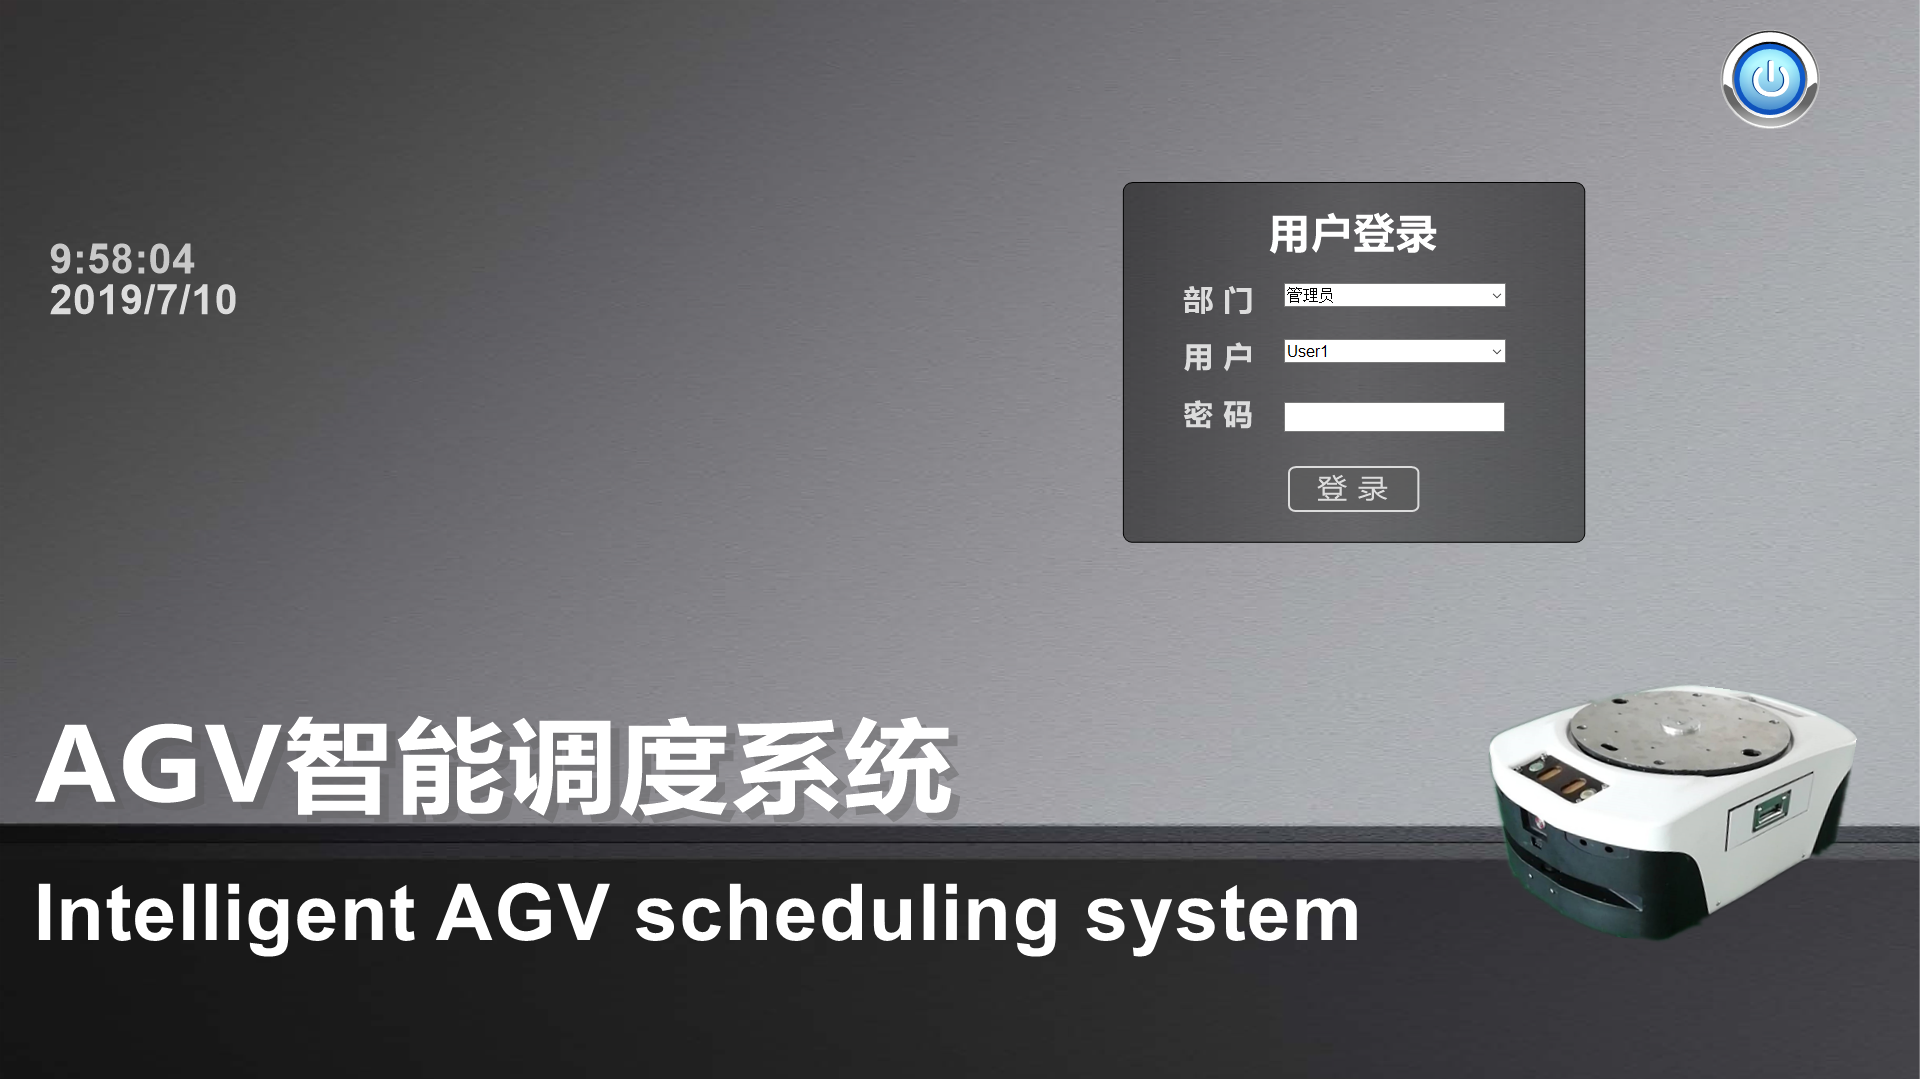 应用于CNC加工企业的AGV智能调度系统